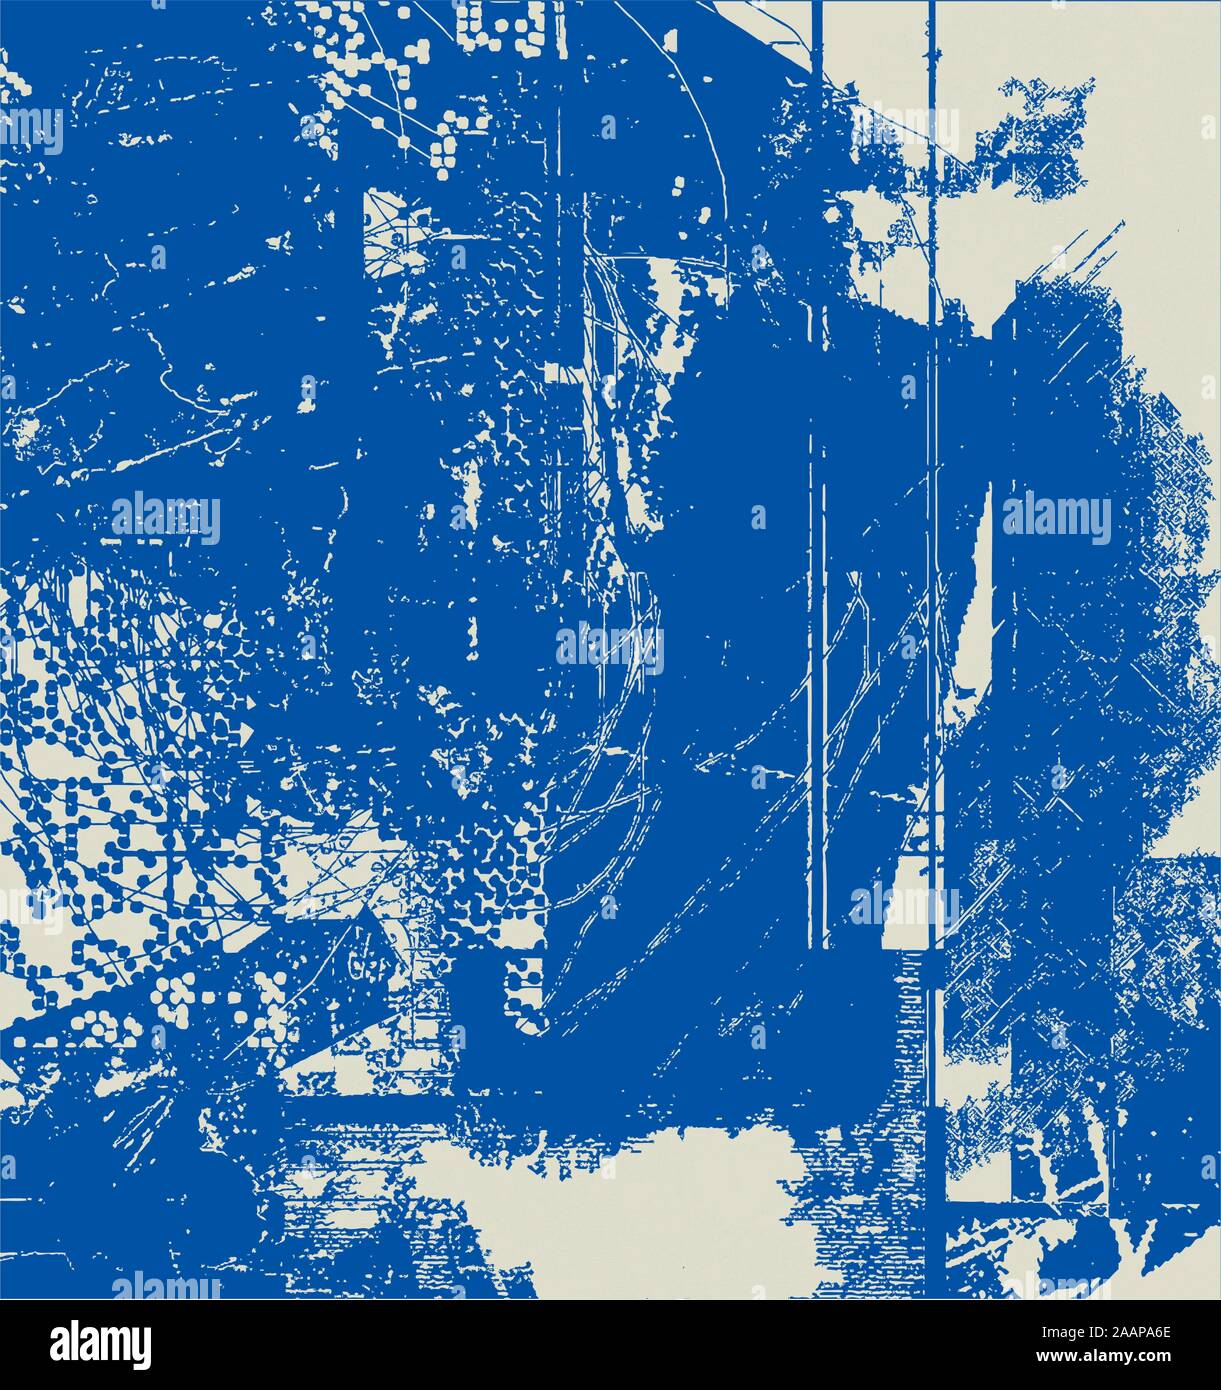 Zusammenfassung Hintergrund Grunge Effekte Papier Design - Blau - Retro Stil Stock Vektor